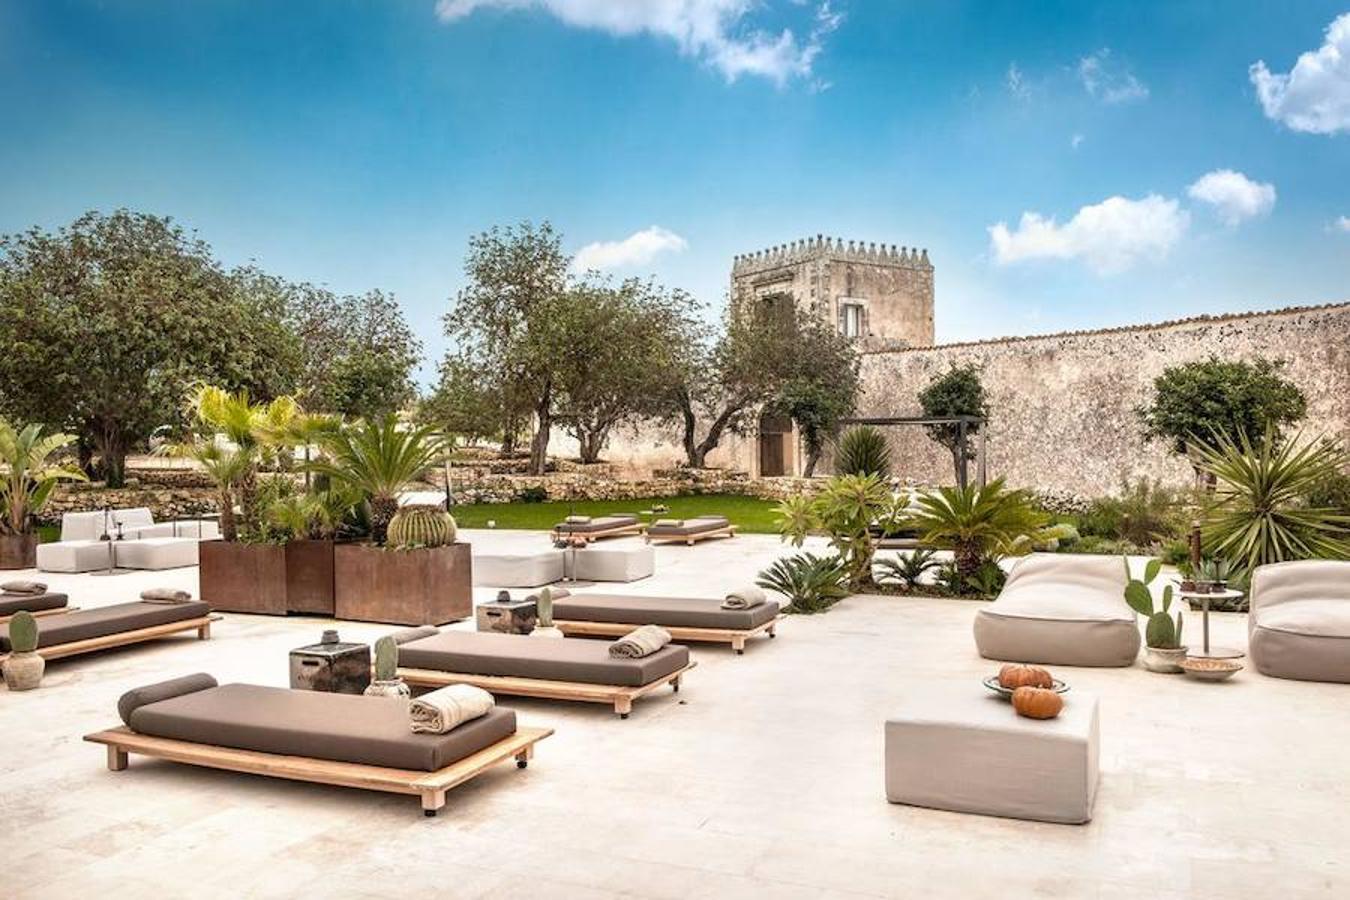 Así es el hotel Dimora delle Balze. La casa está construida alrededor de dos hermosos patios, flanqueados por terrazas y un bello jardín con piscina climatizada de agua salada